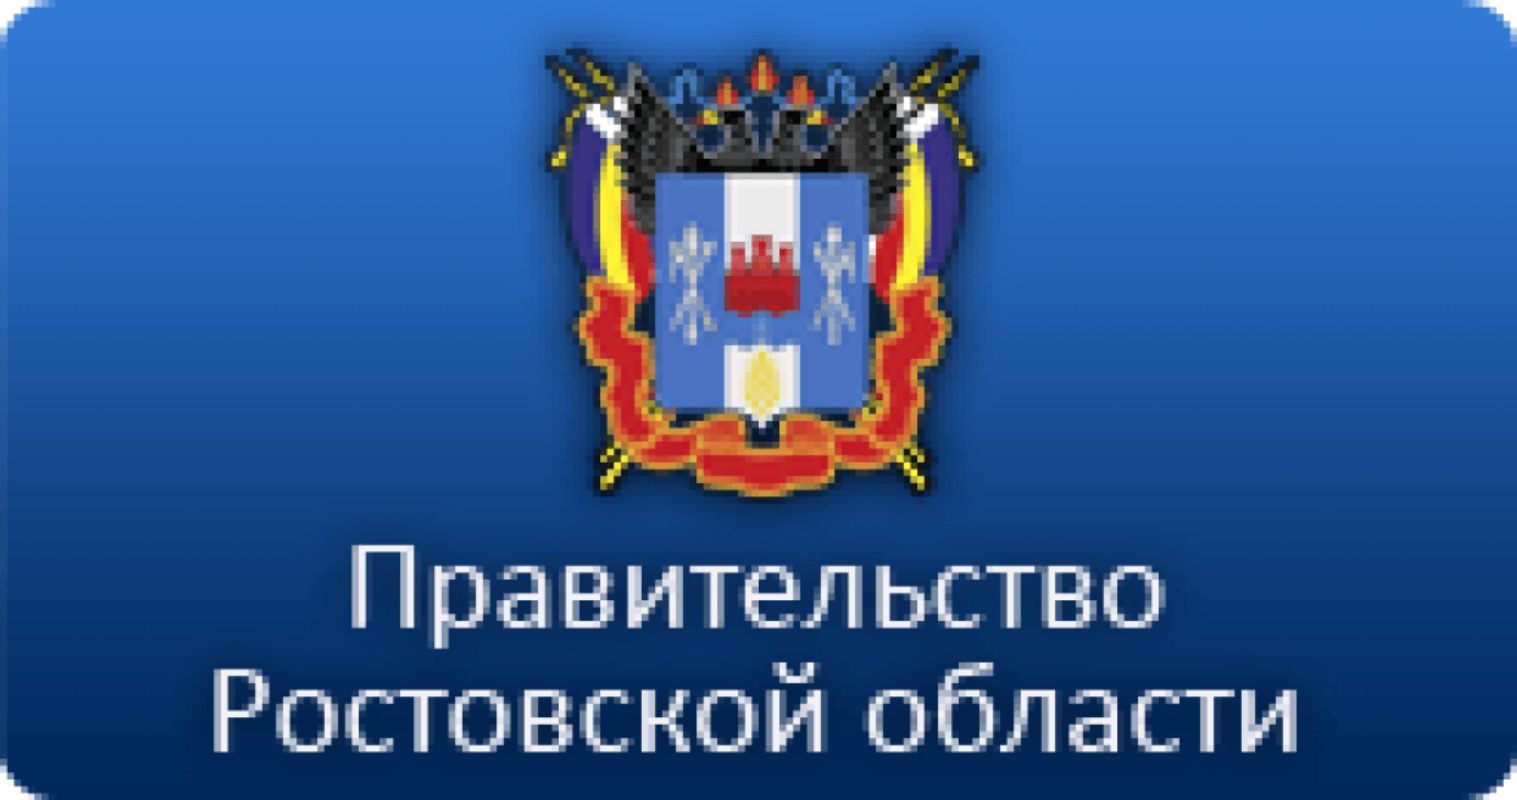 Правительство Ростовской области лого. Администрация Ростовской области.